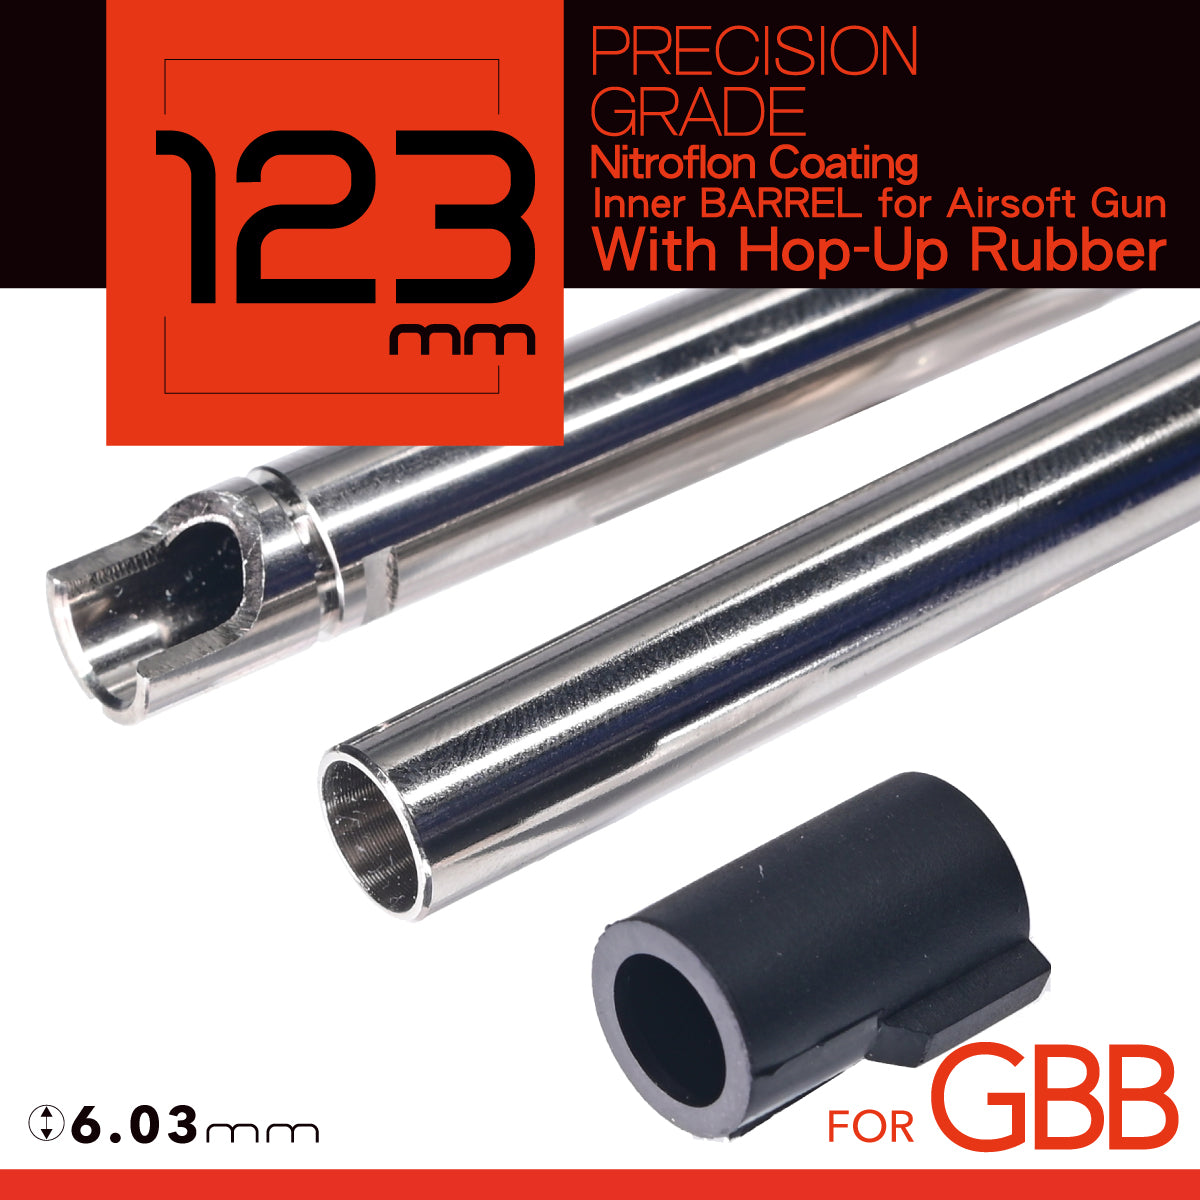 UNICORN Nitroflon Coating 6.03MM Ultimate Precision 123mm Inner Barrel For GBB